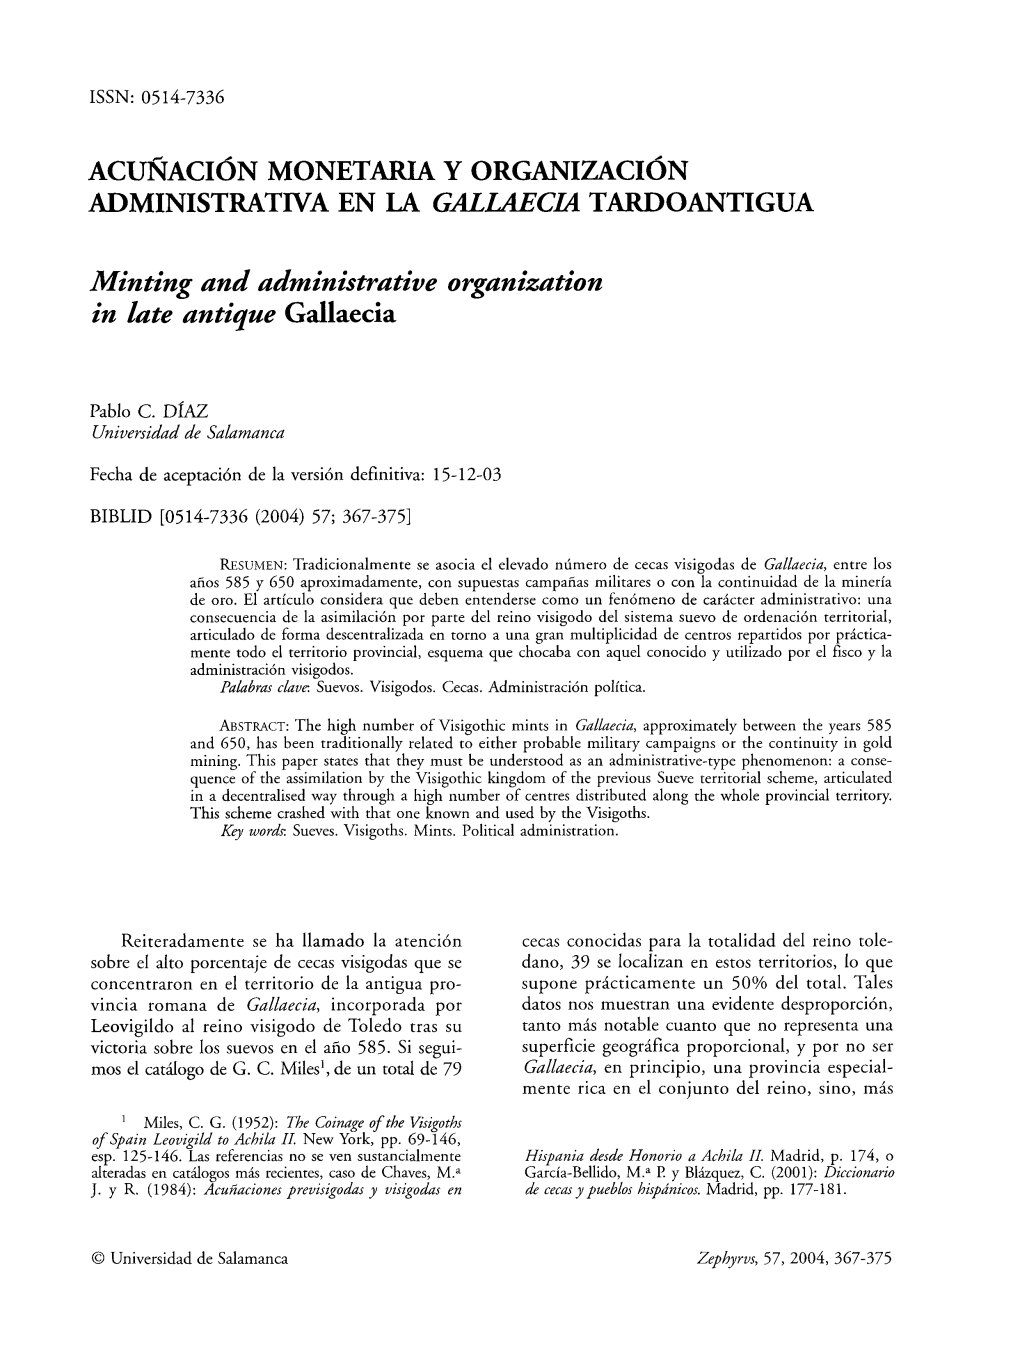 Acuñación Monetaria Y Organización Administrativa En La Gallaecia Tardoantigua